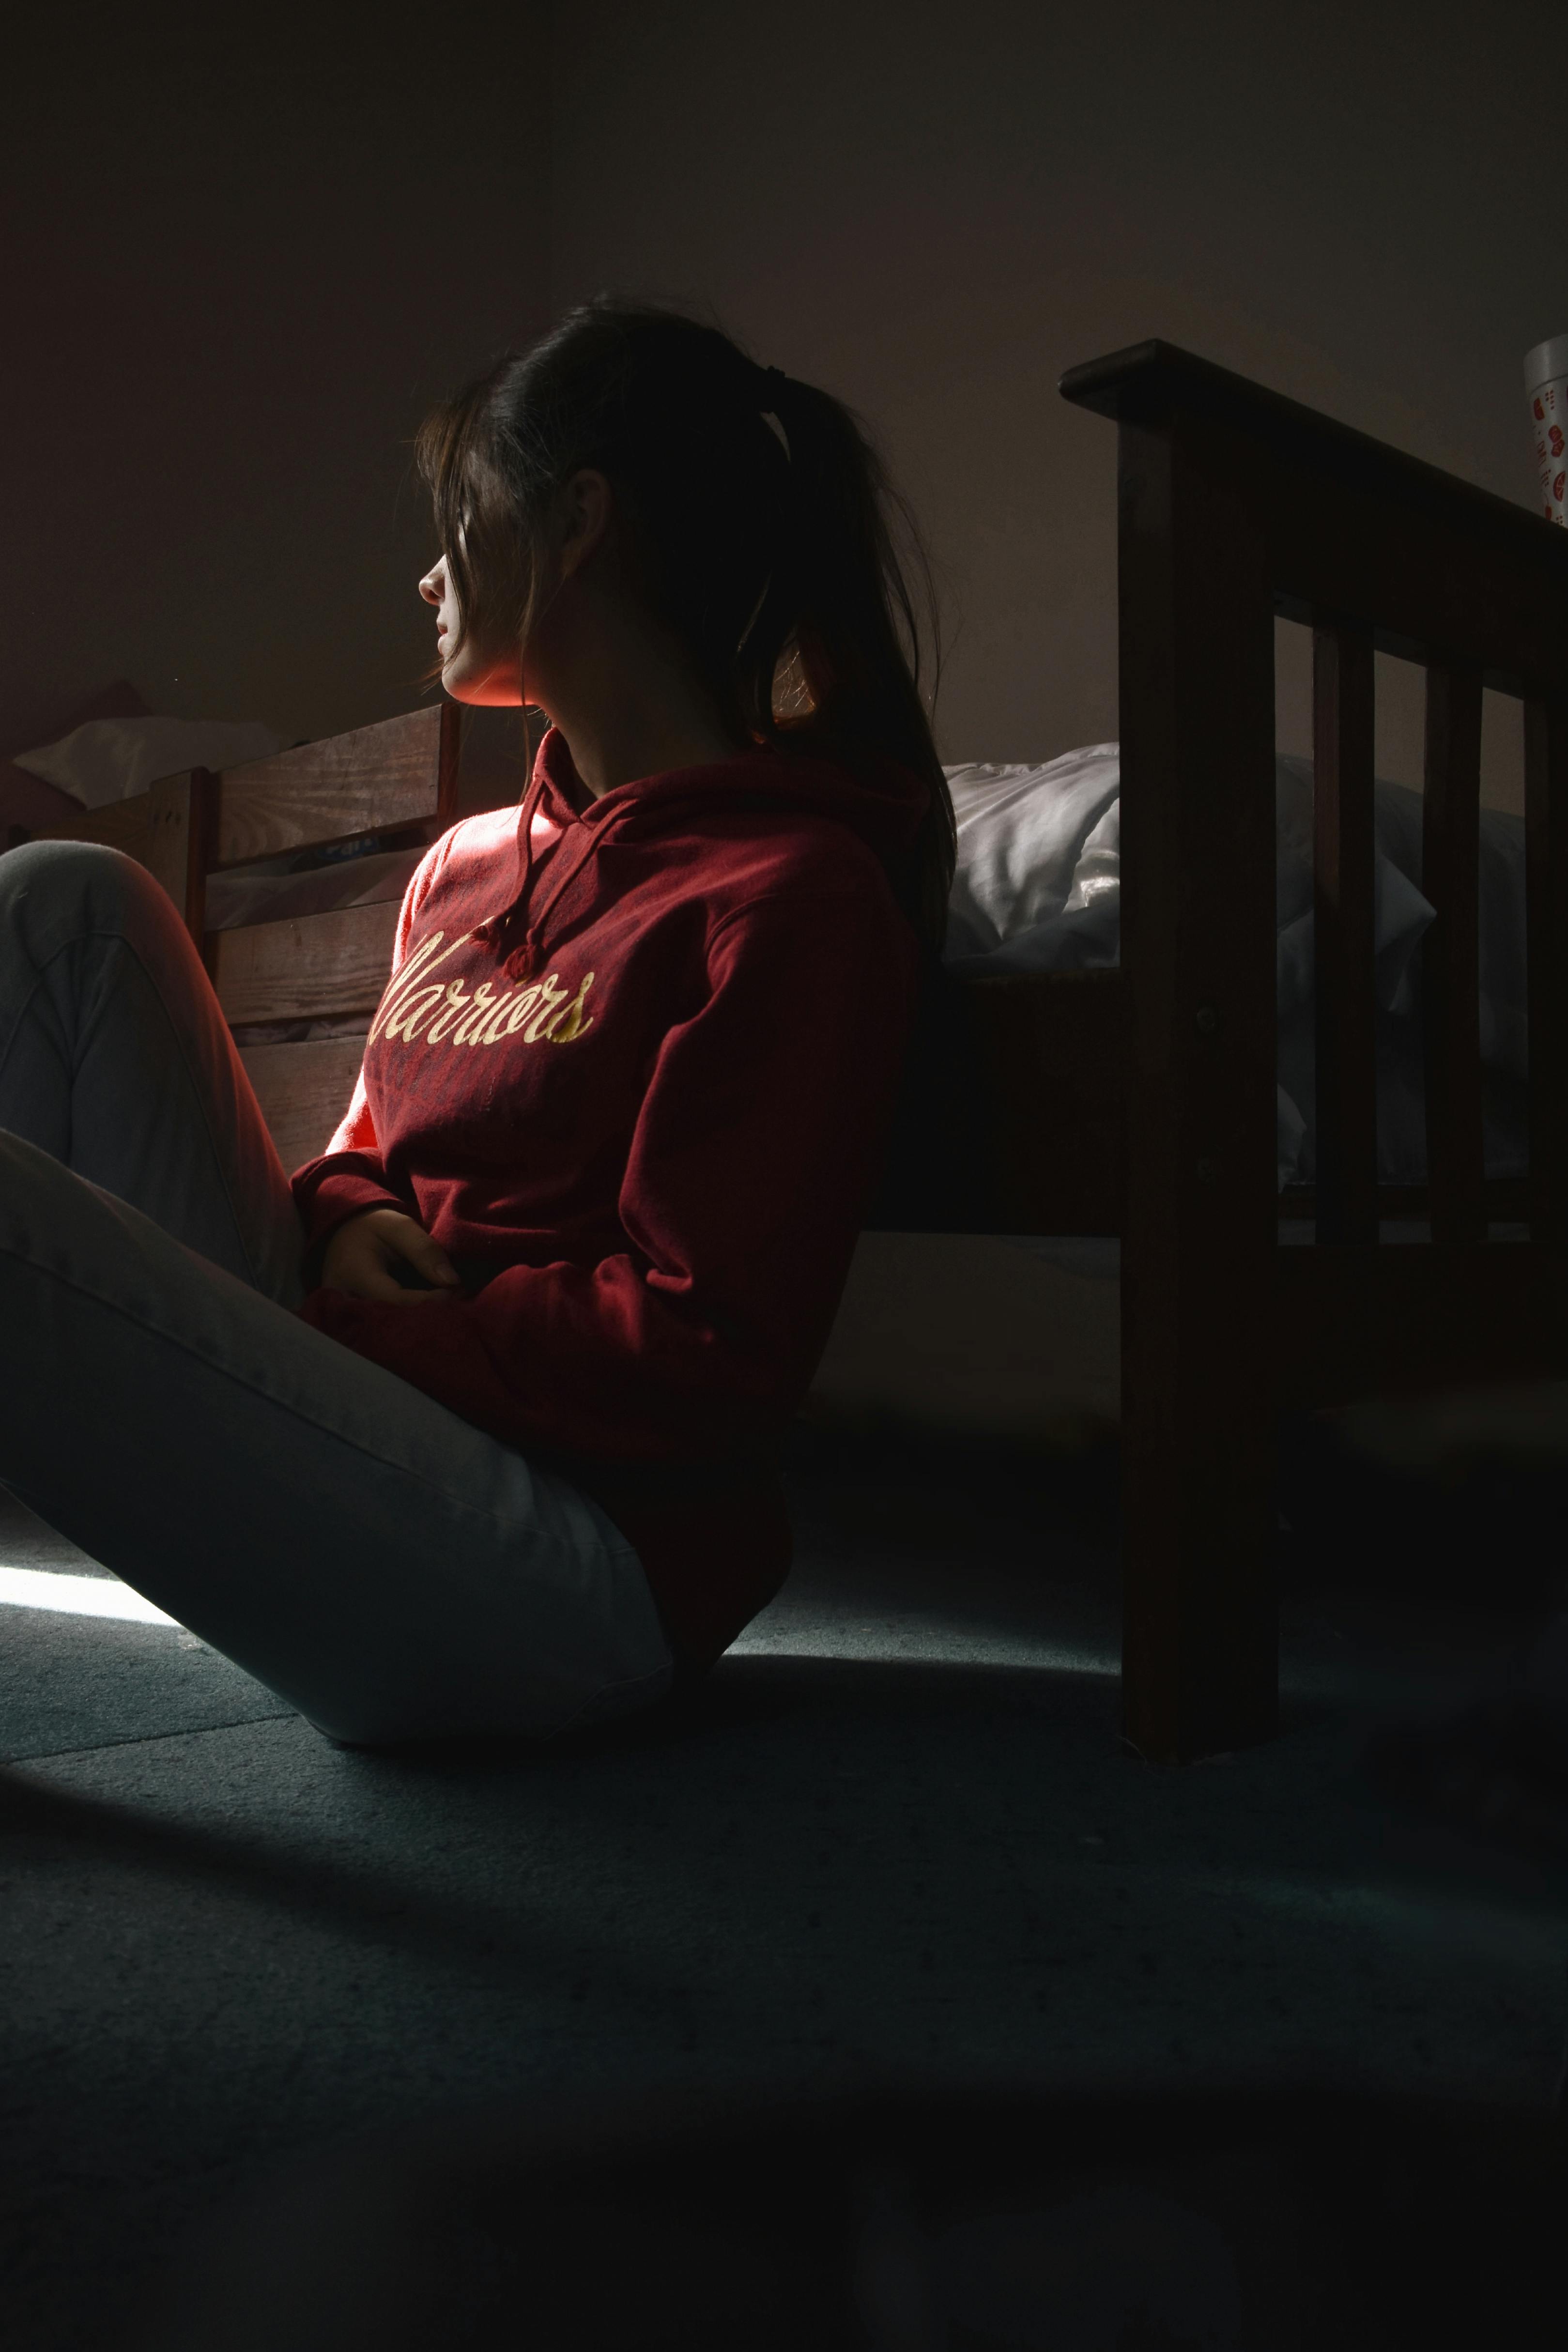 Ein Teil der Silhouette einer traurigen Frau, die neben ihrem Bett auf dem Boden sitzt | Quelle: Pexels